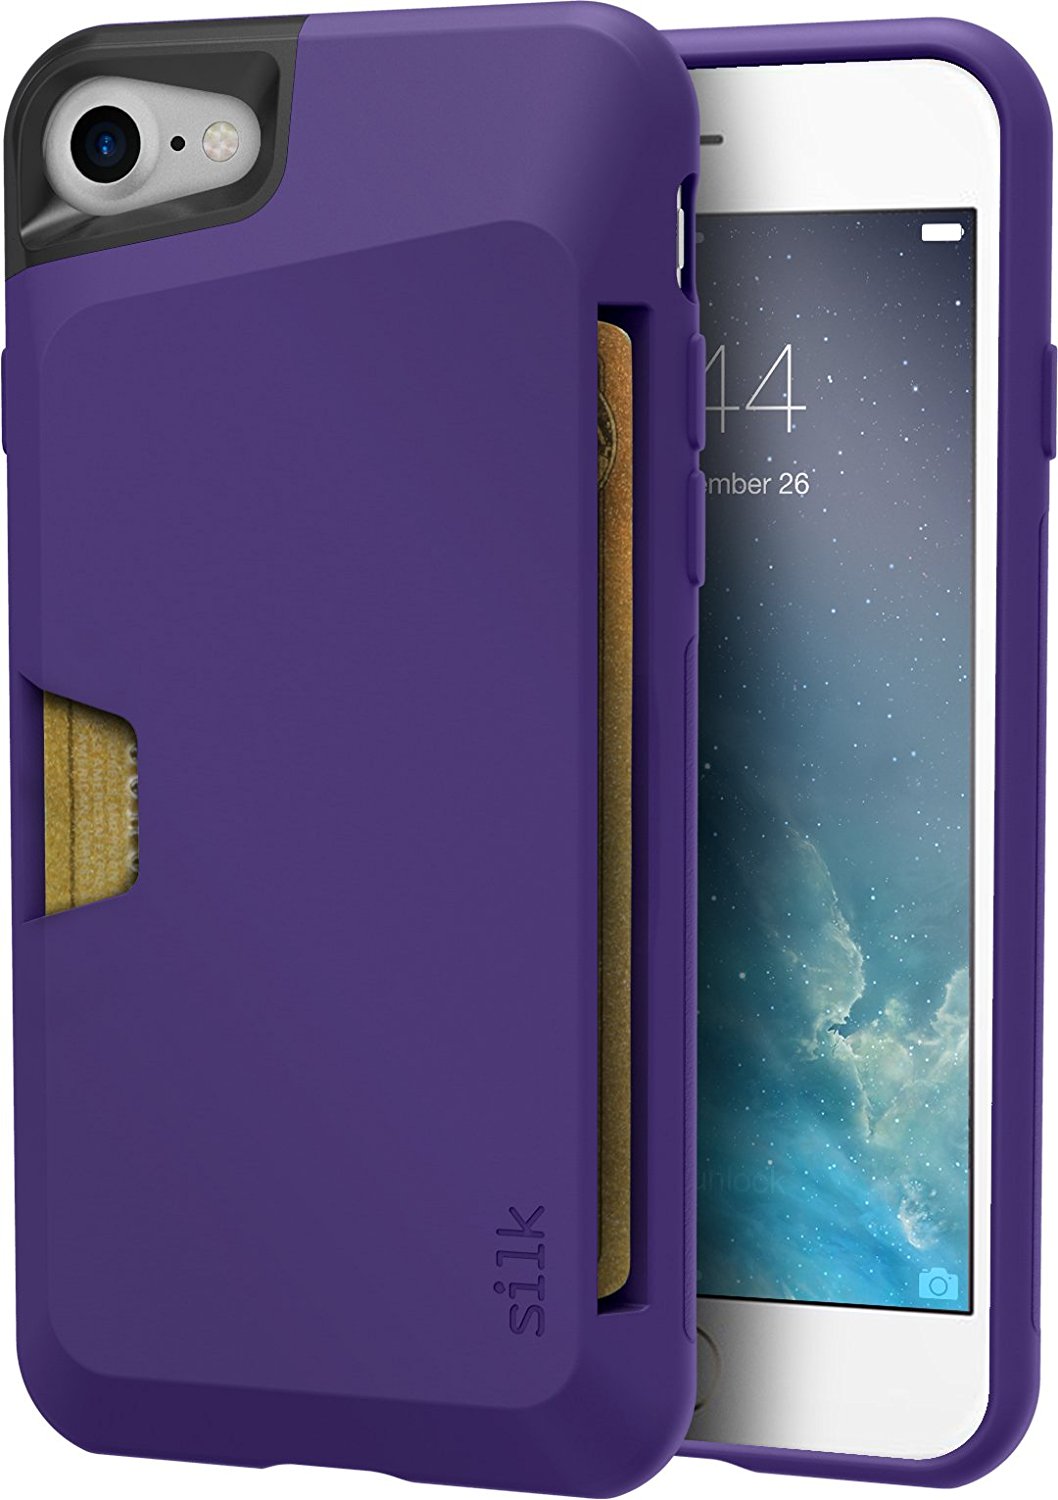 silk-iphone-wallet-case